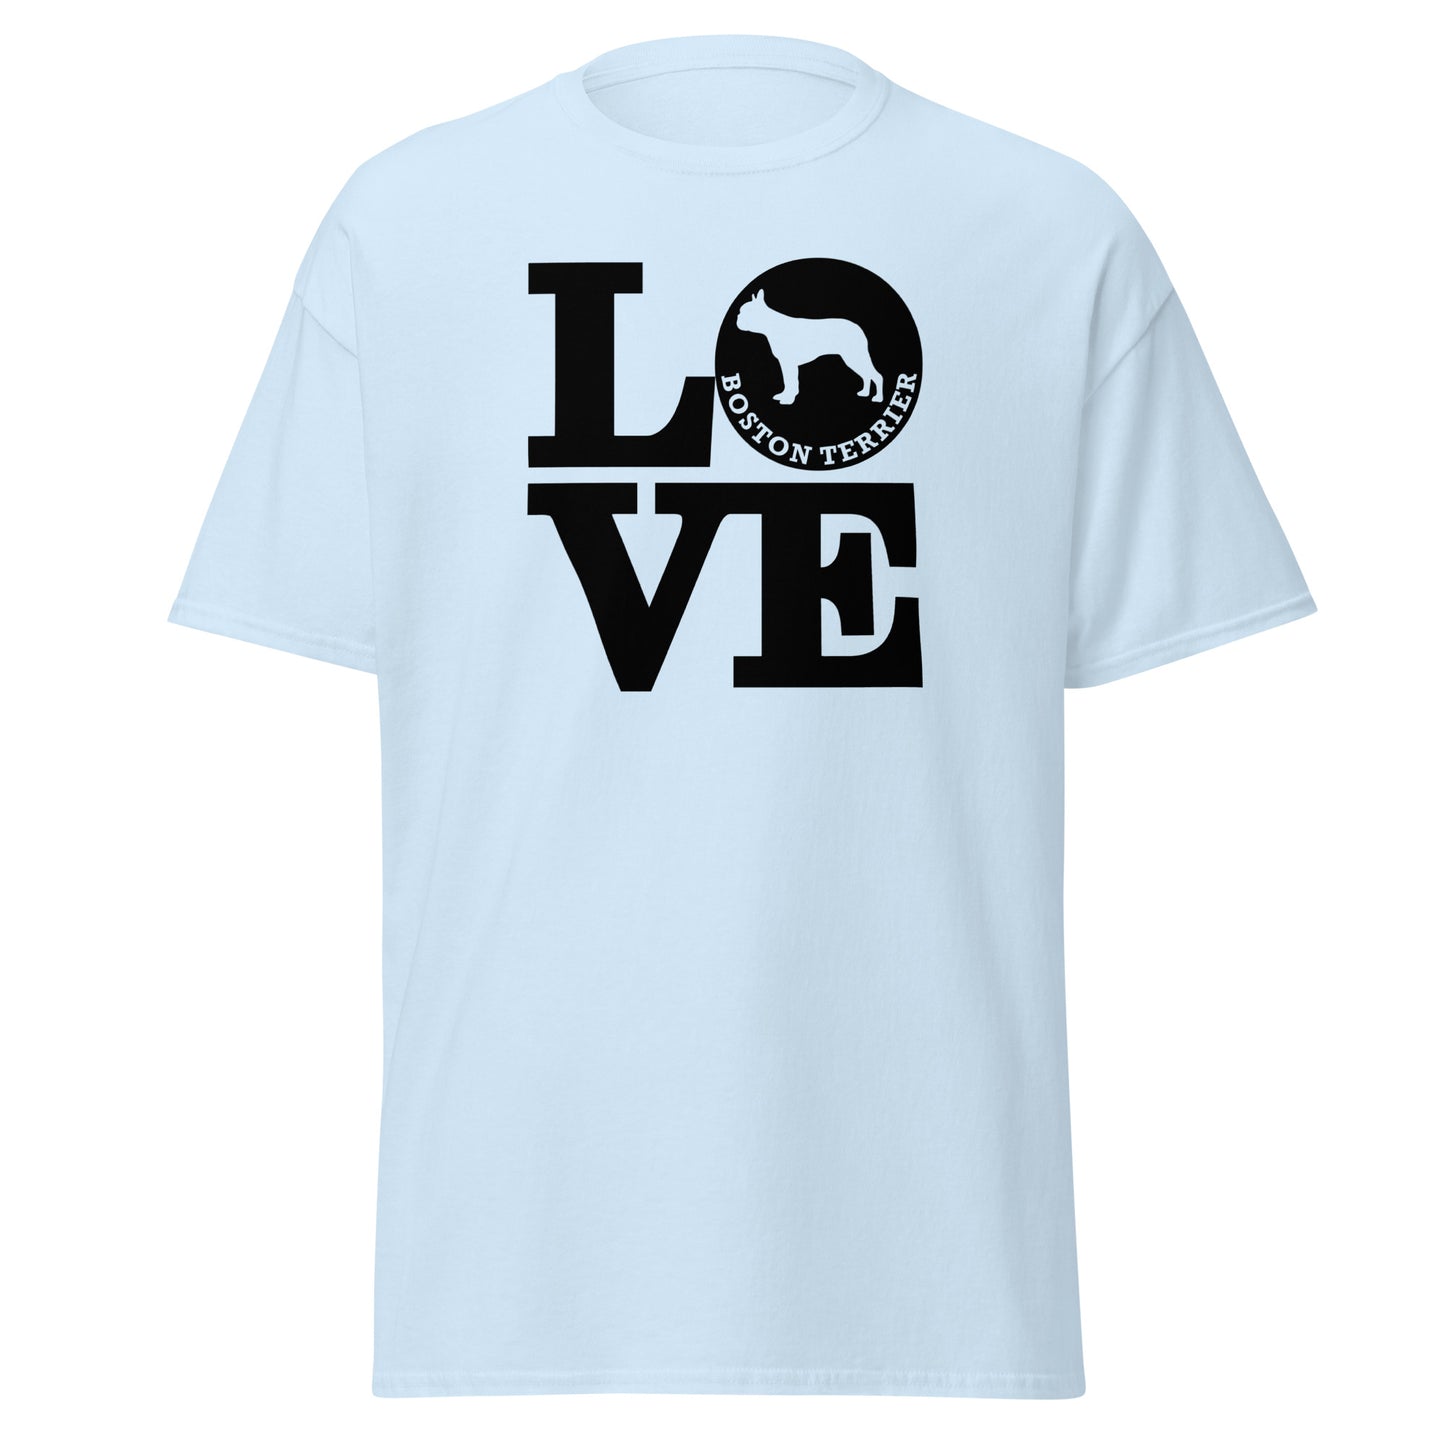 Boston Terrier Love men’s light blue t-shirt by Dog Artistry.